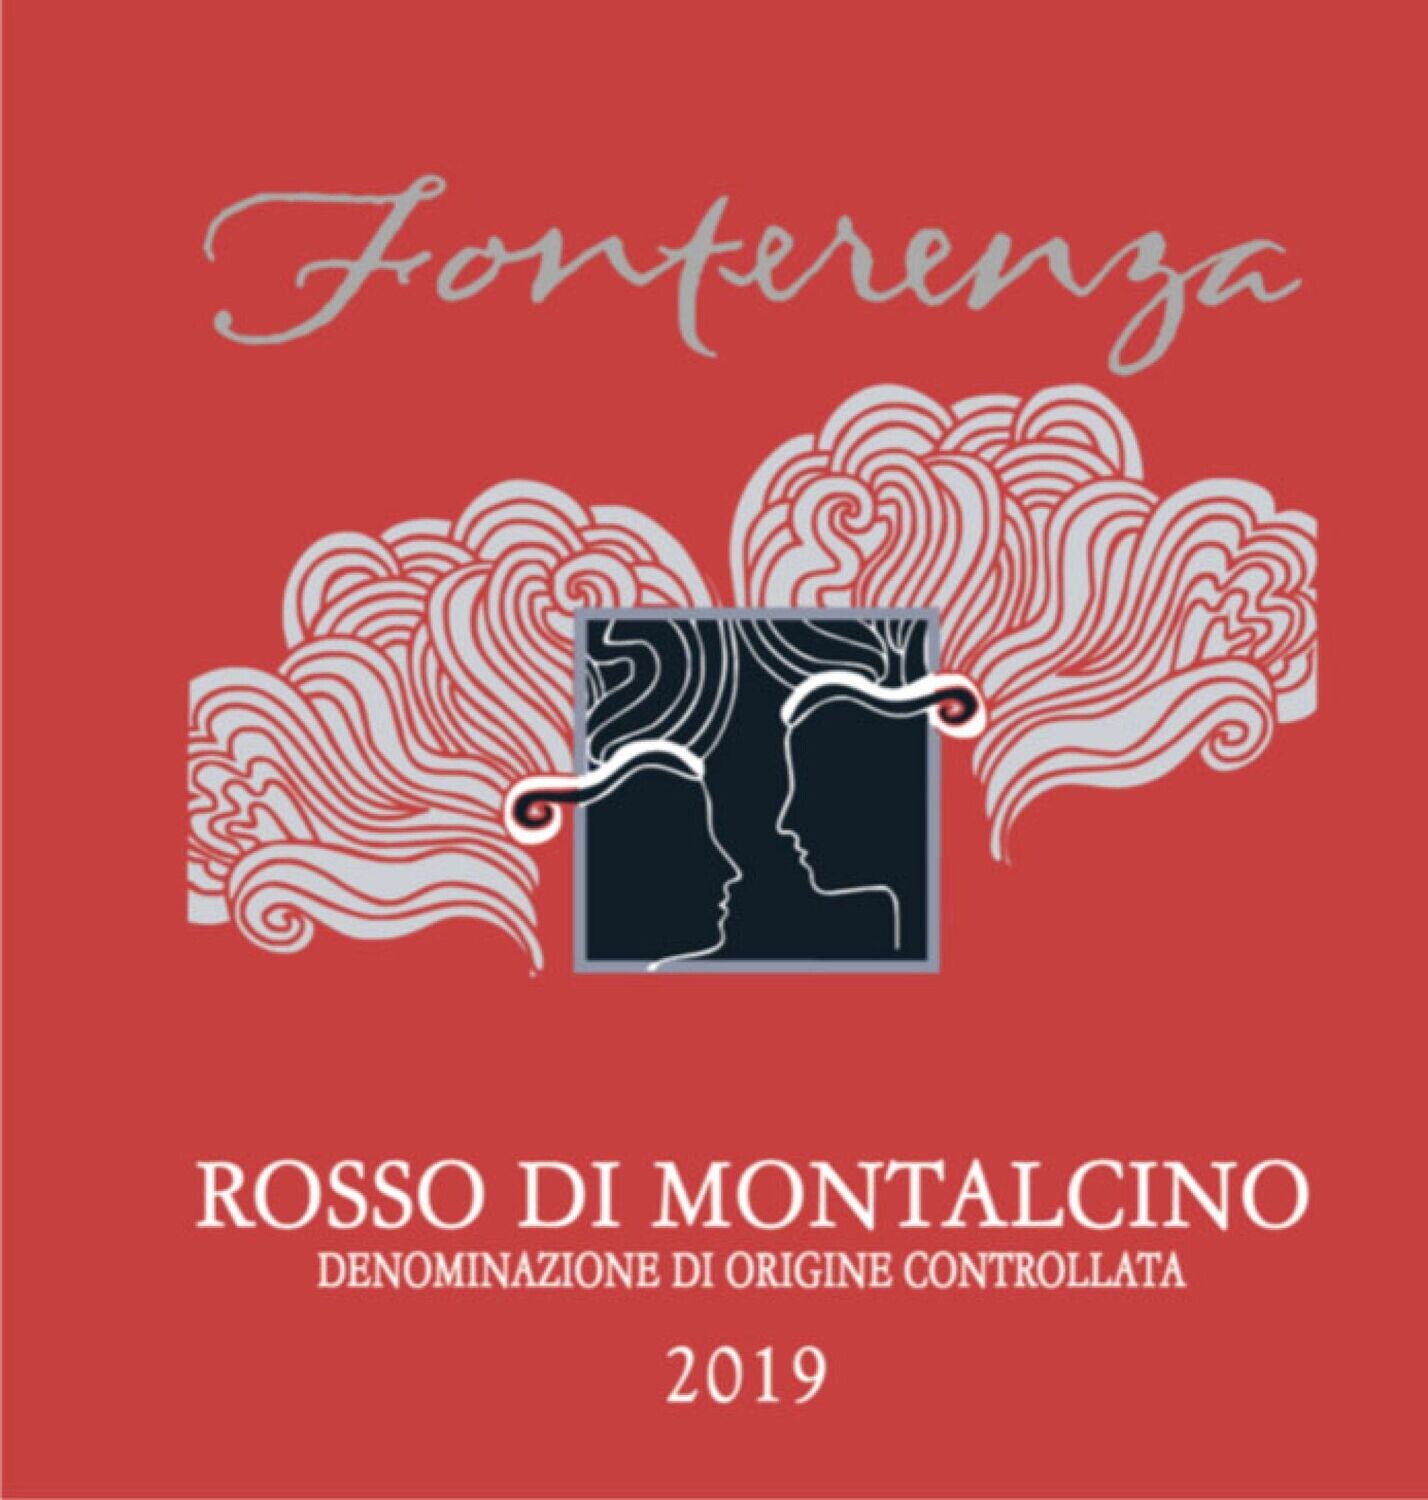 Fonterenza 2019 Rosso di Montalcino